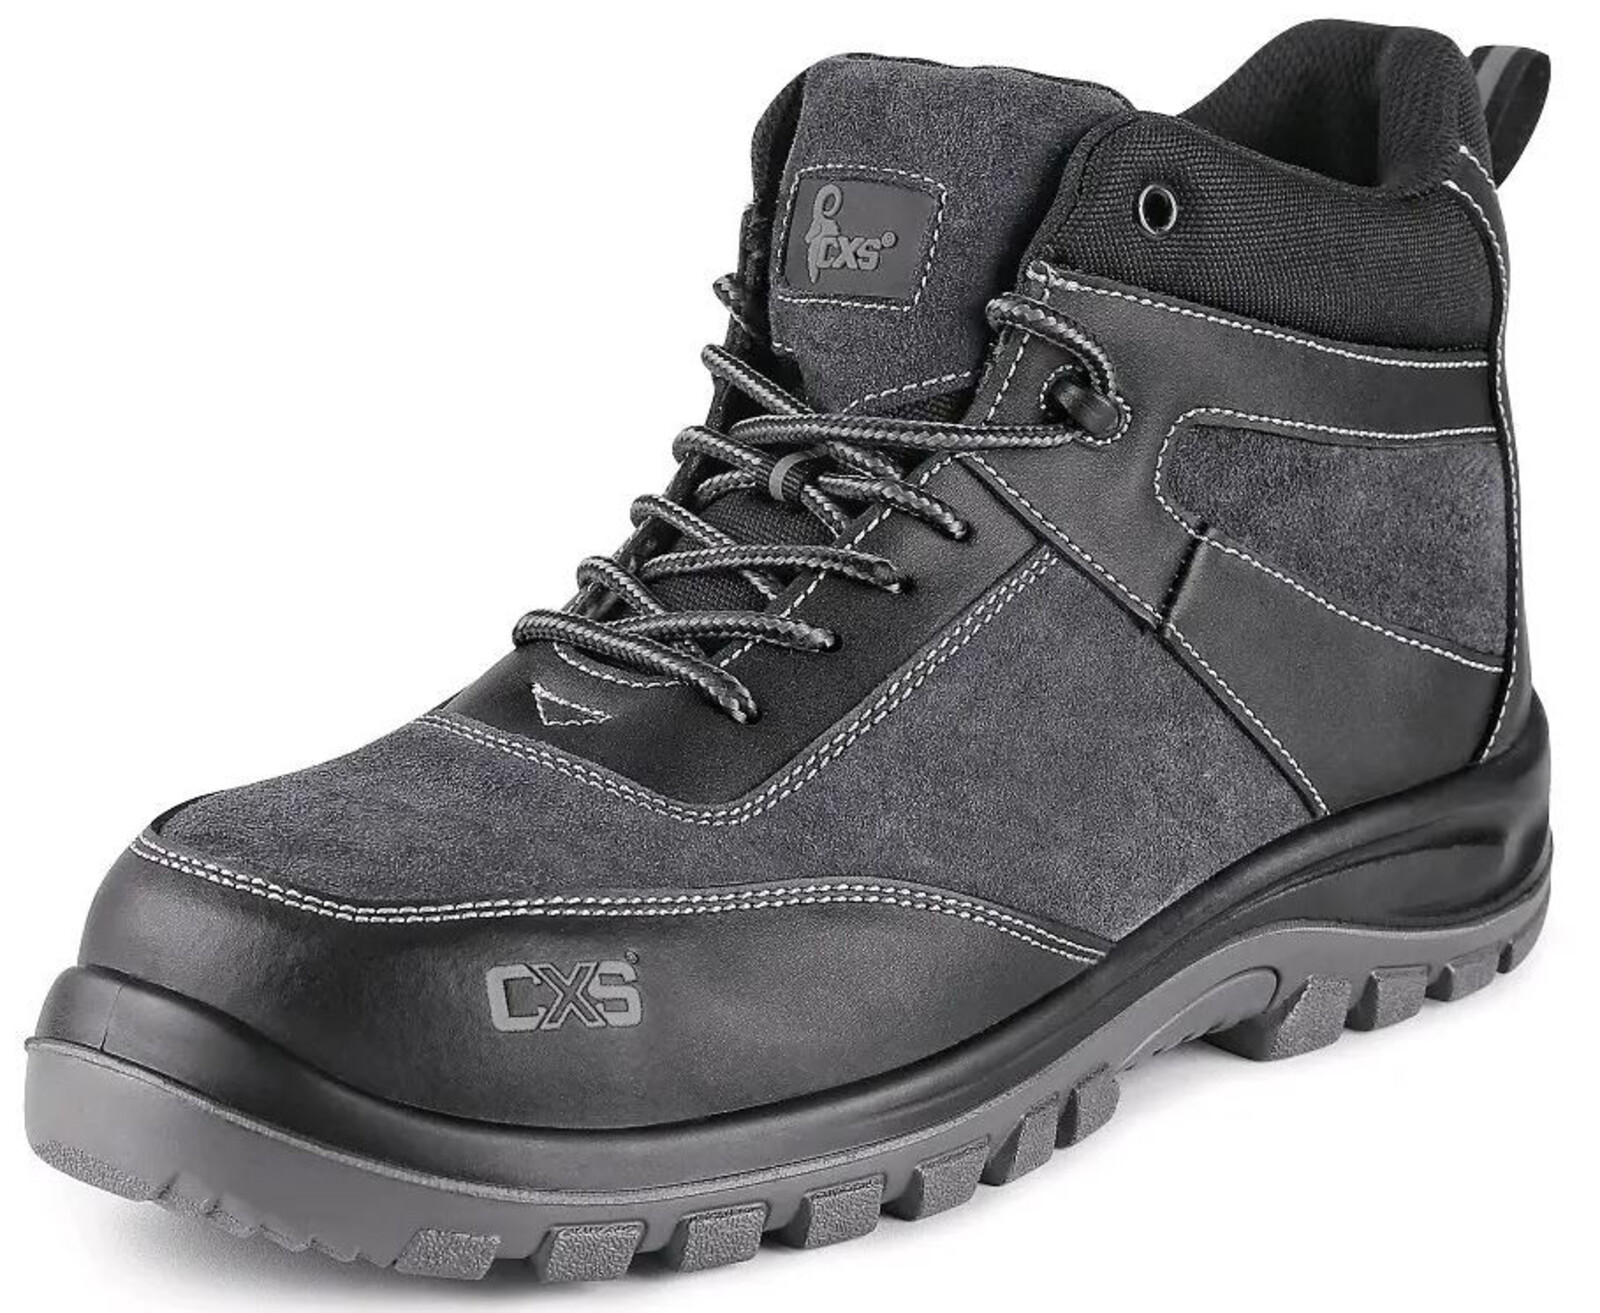 Pracovná členková obuv CXS Profit Win O1 FO SRC - veľkosť: 46, farba: čierna/sivá